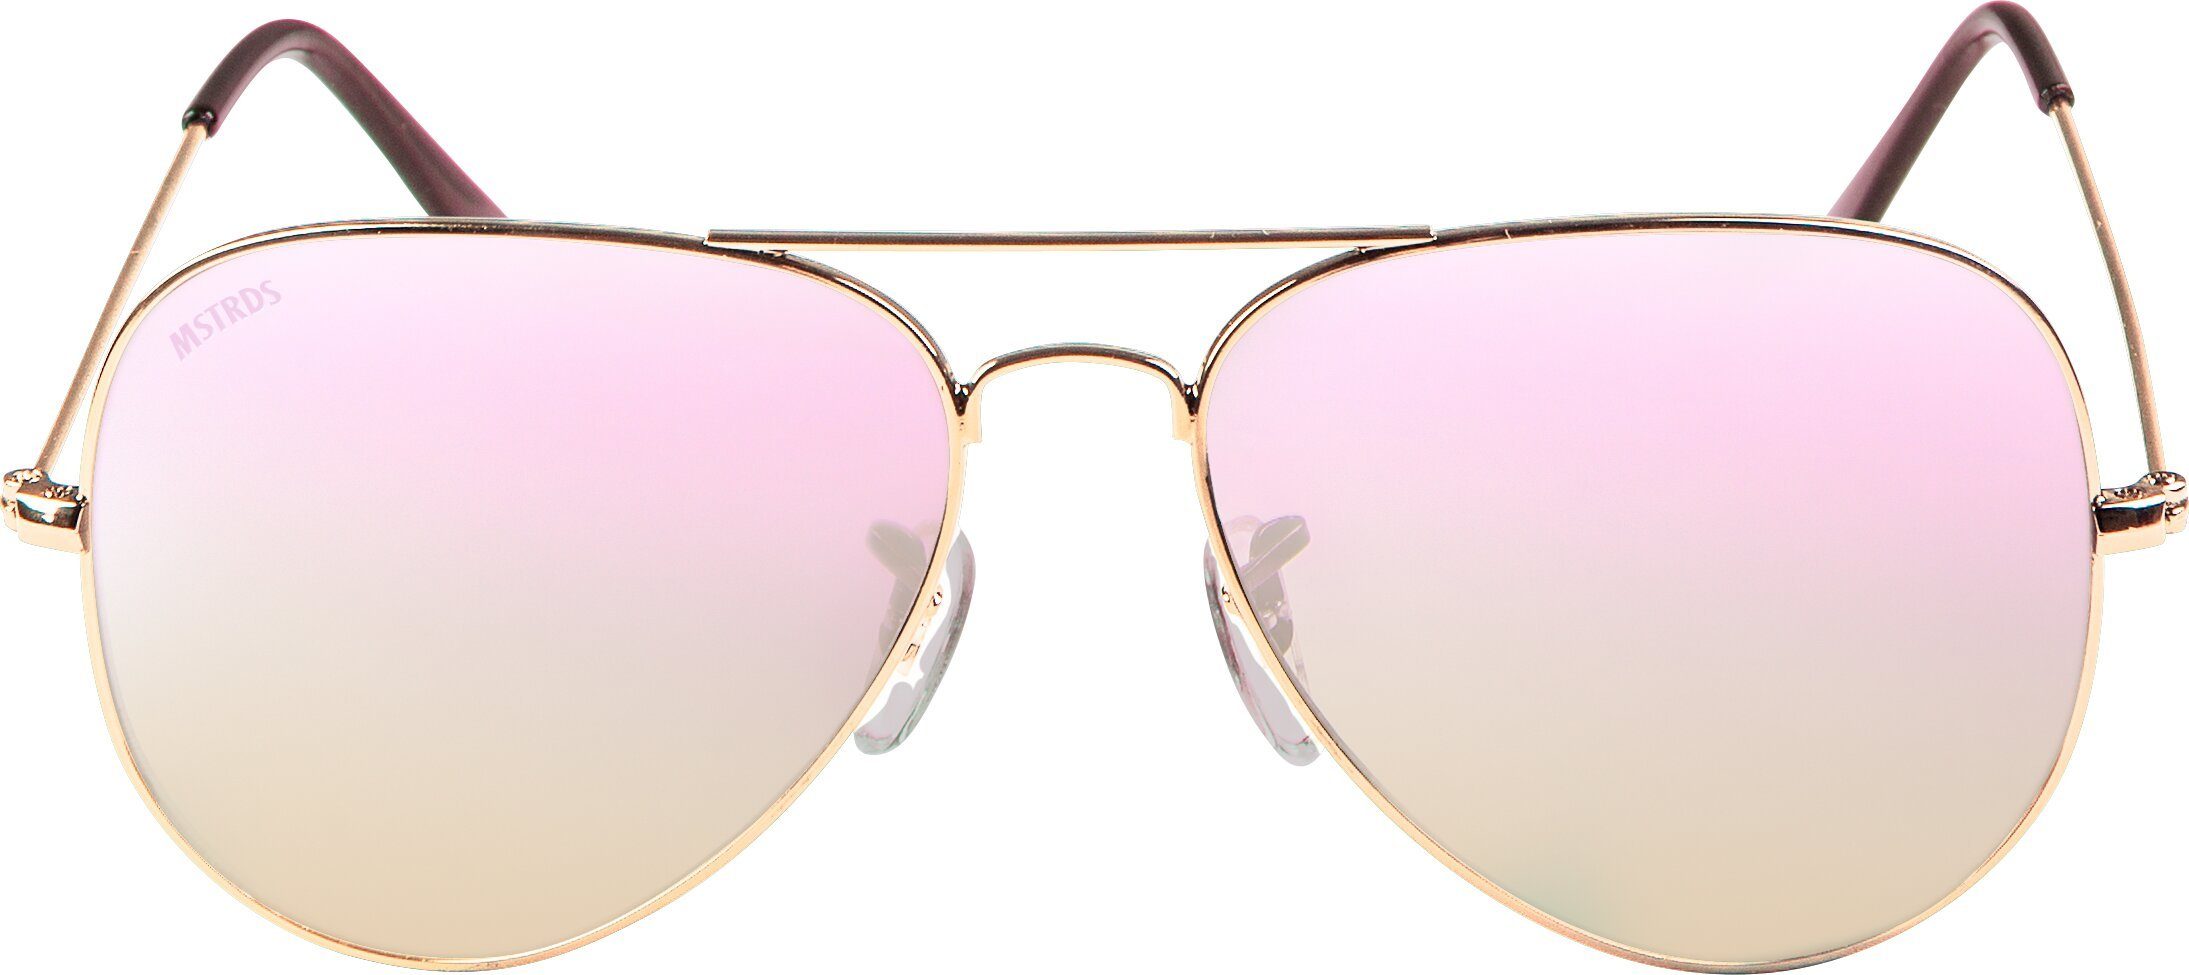 Sunglasses gold/rosé Sonnenbrille PureAv Accessoires MSTRDS